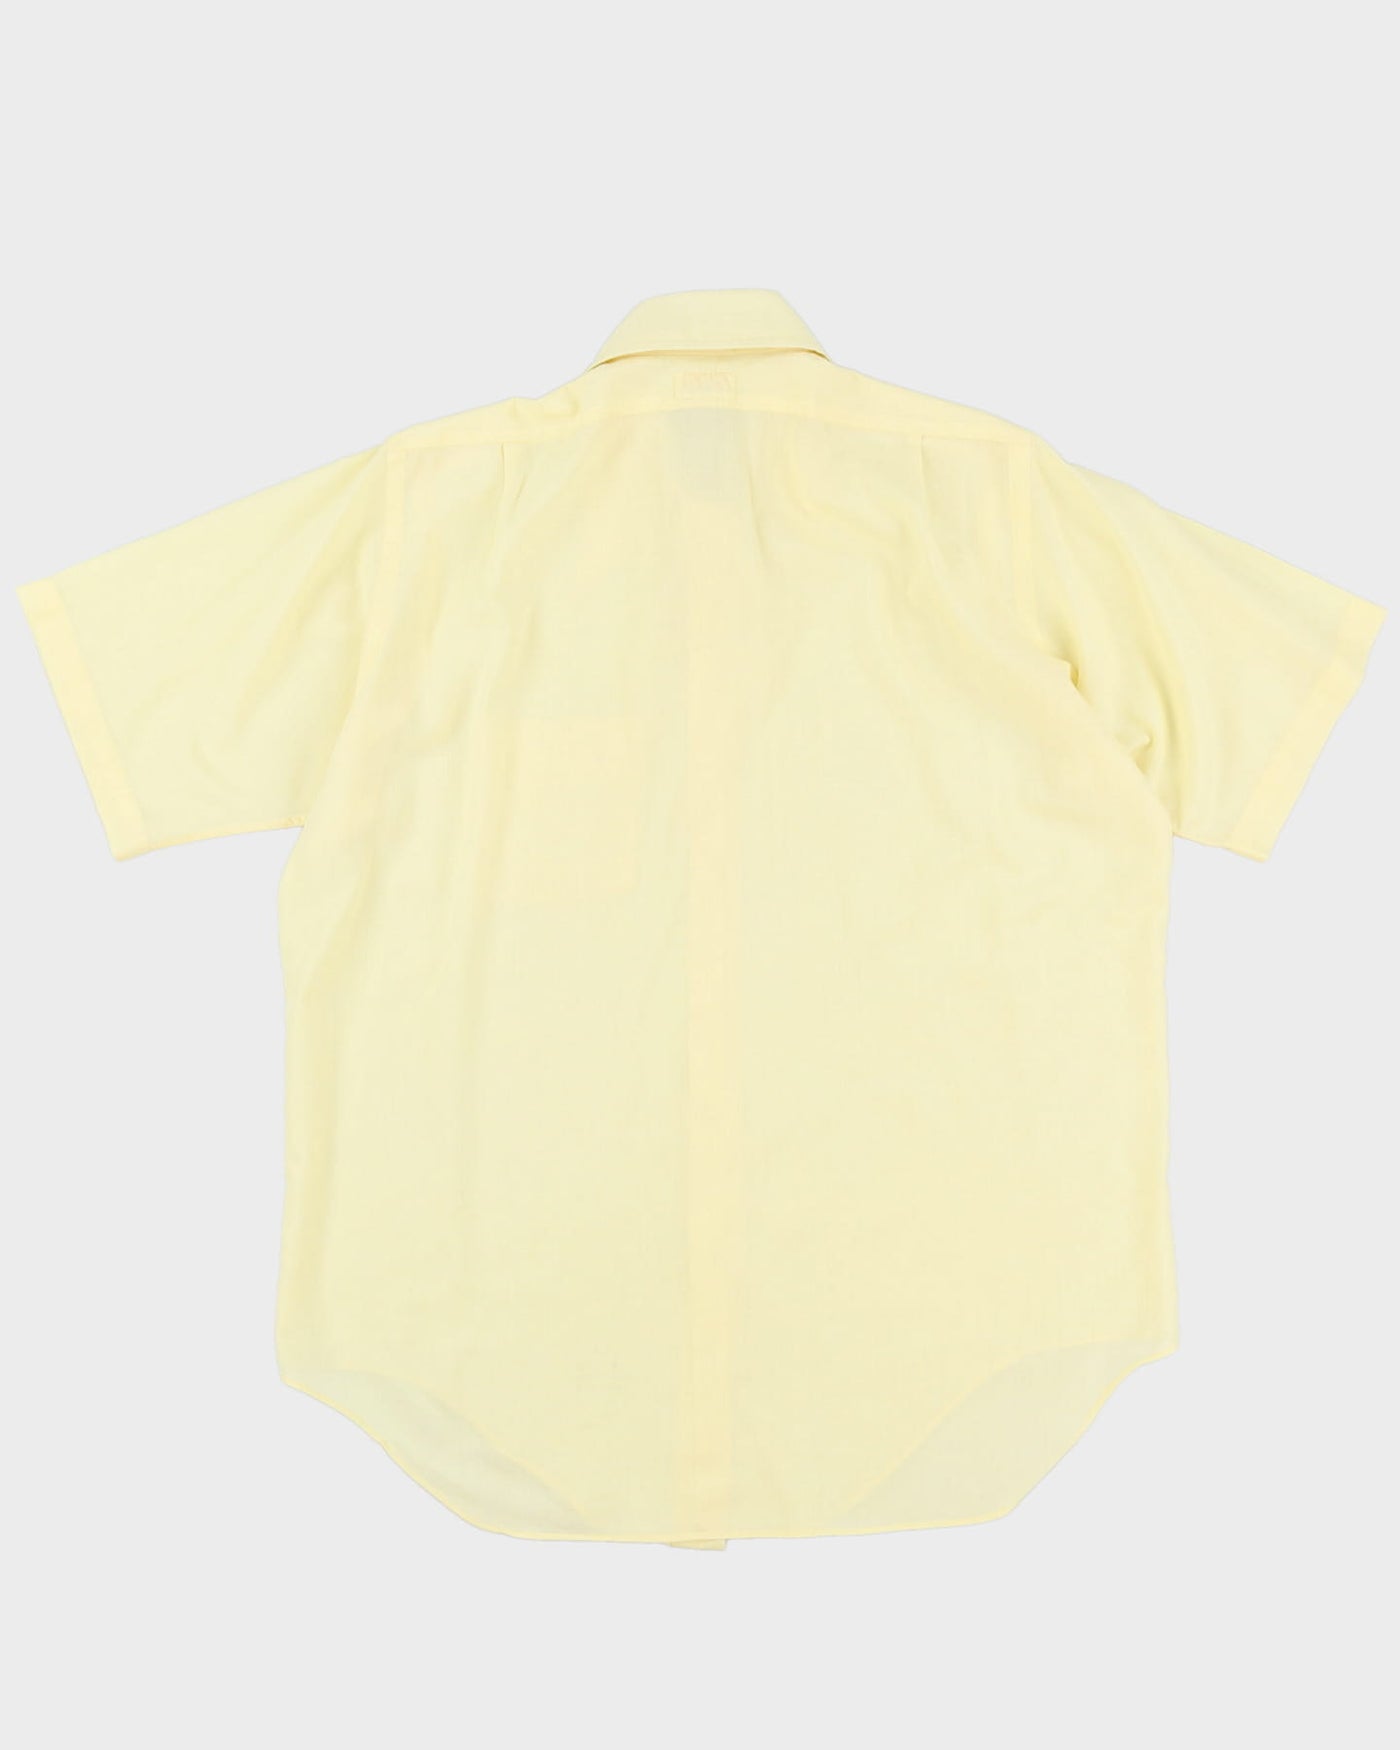 70s J.D. Sherman Yellow Button Up Short-Sleeve Shirt - XL